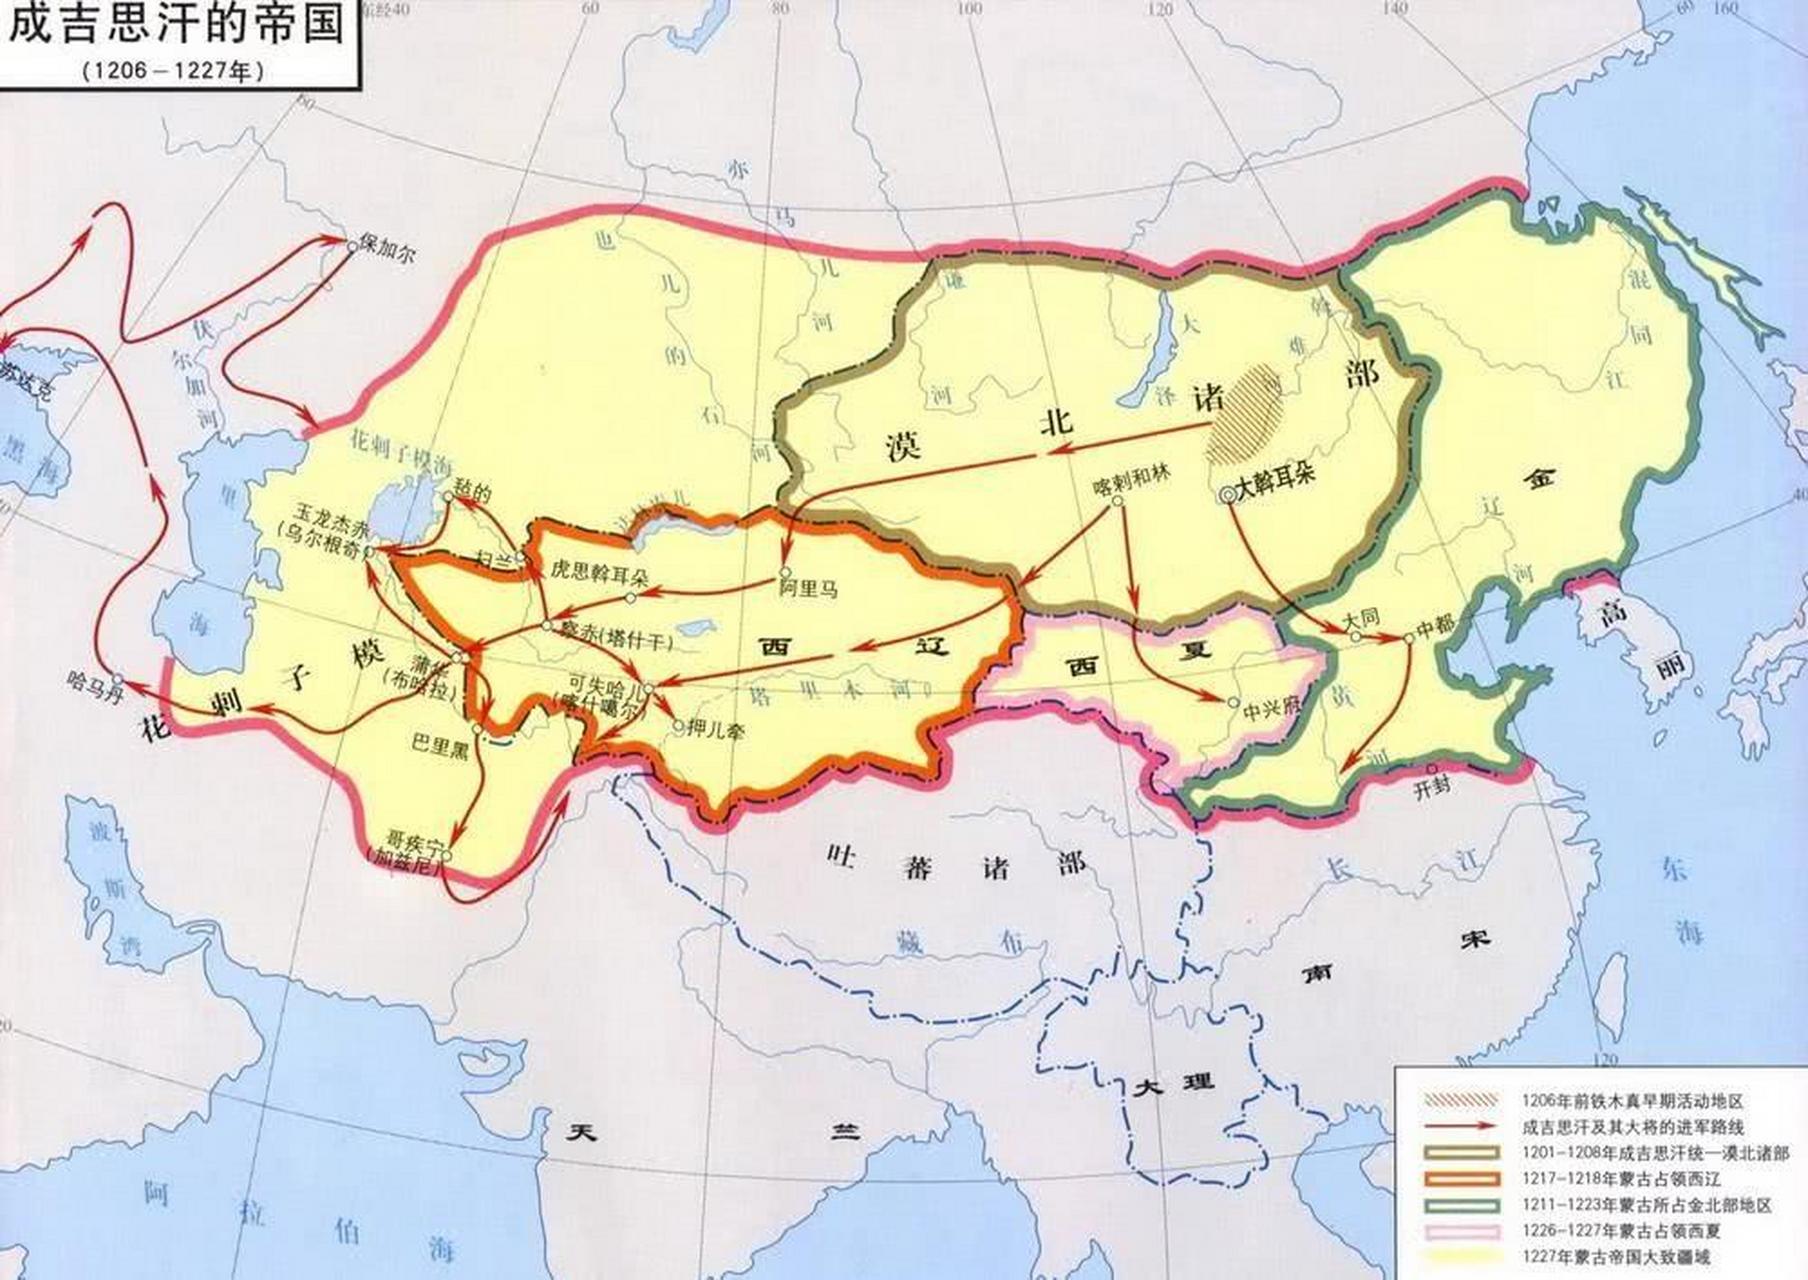 大蒙古帝国兴衰史(扩张)